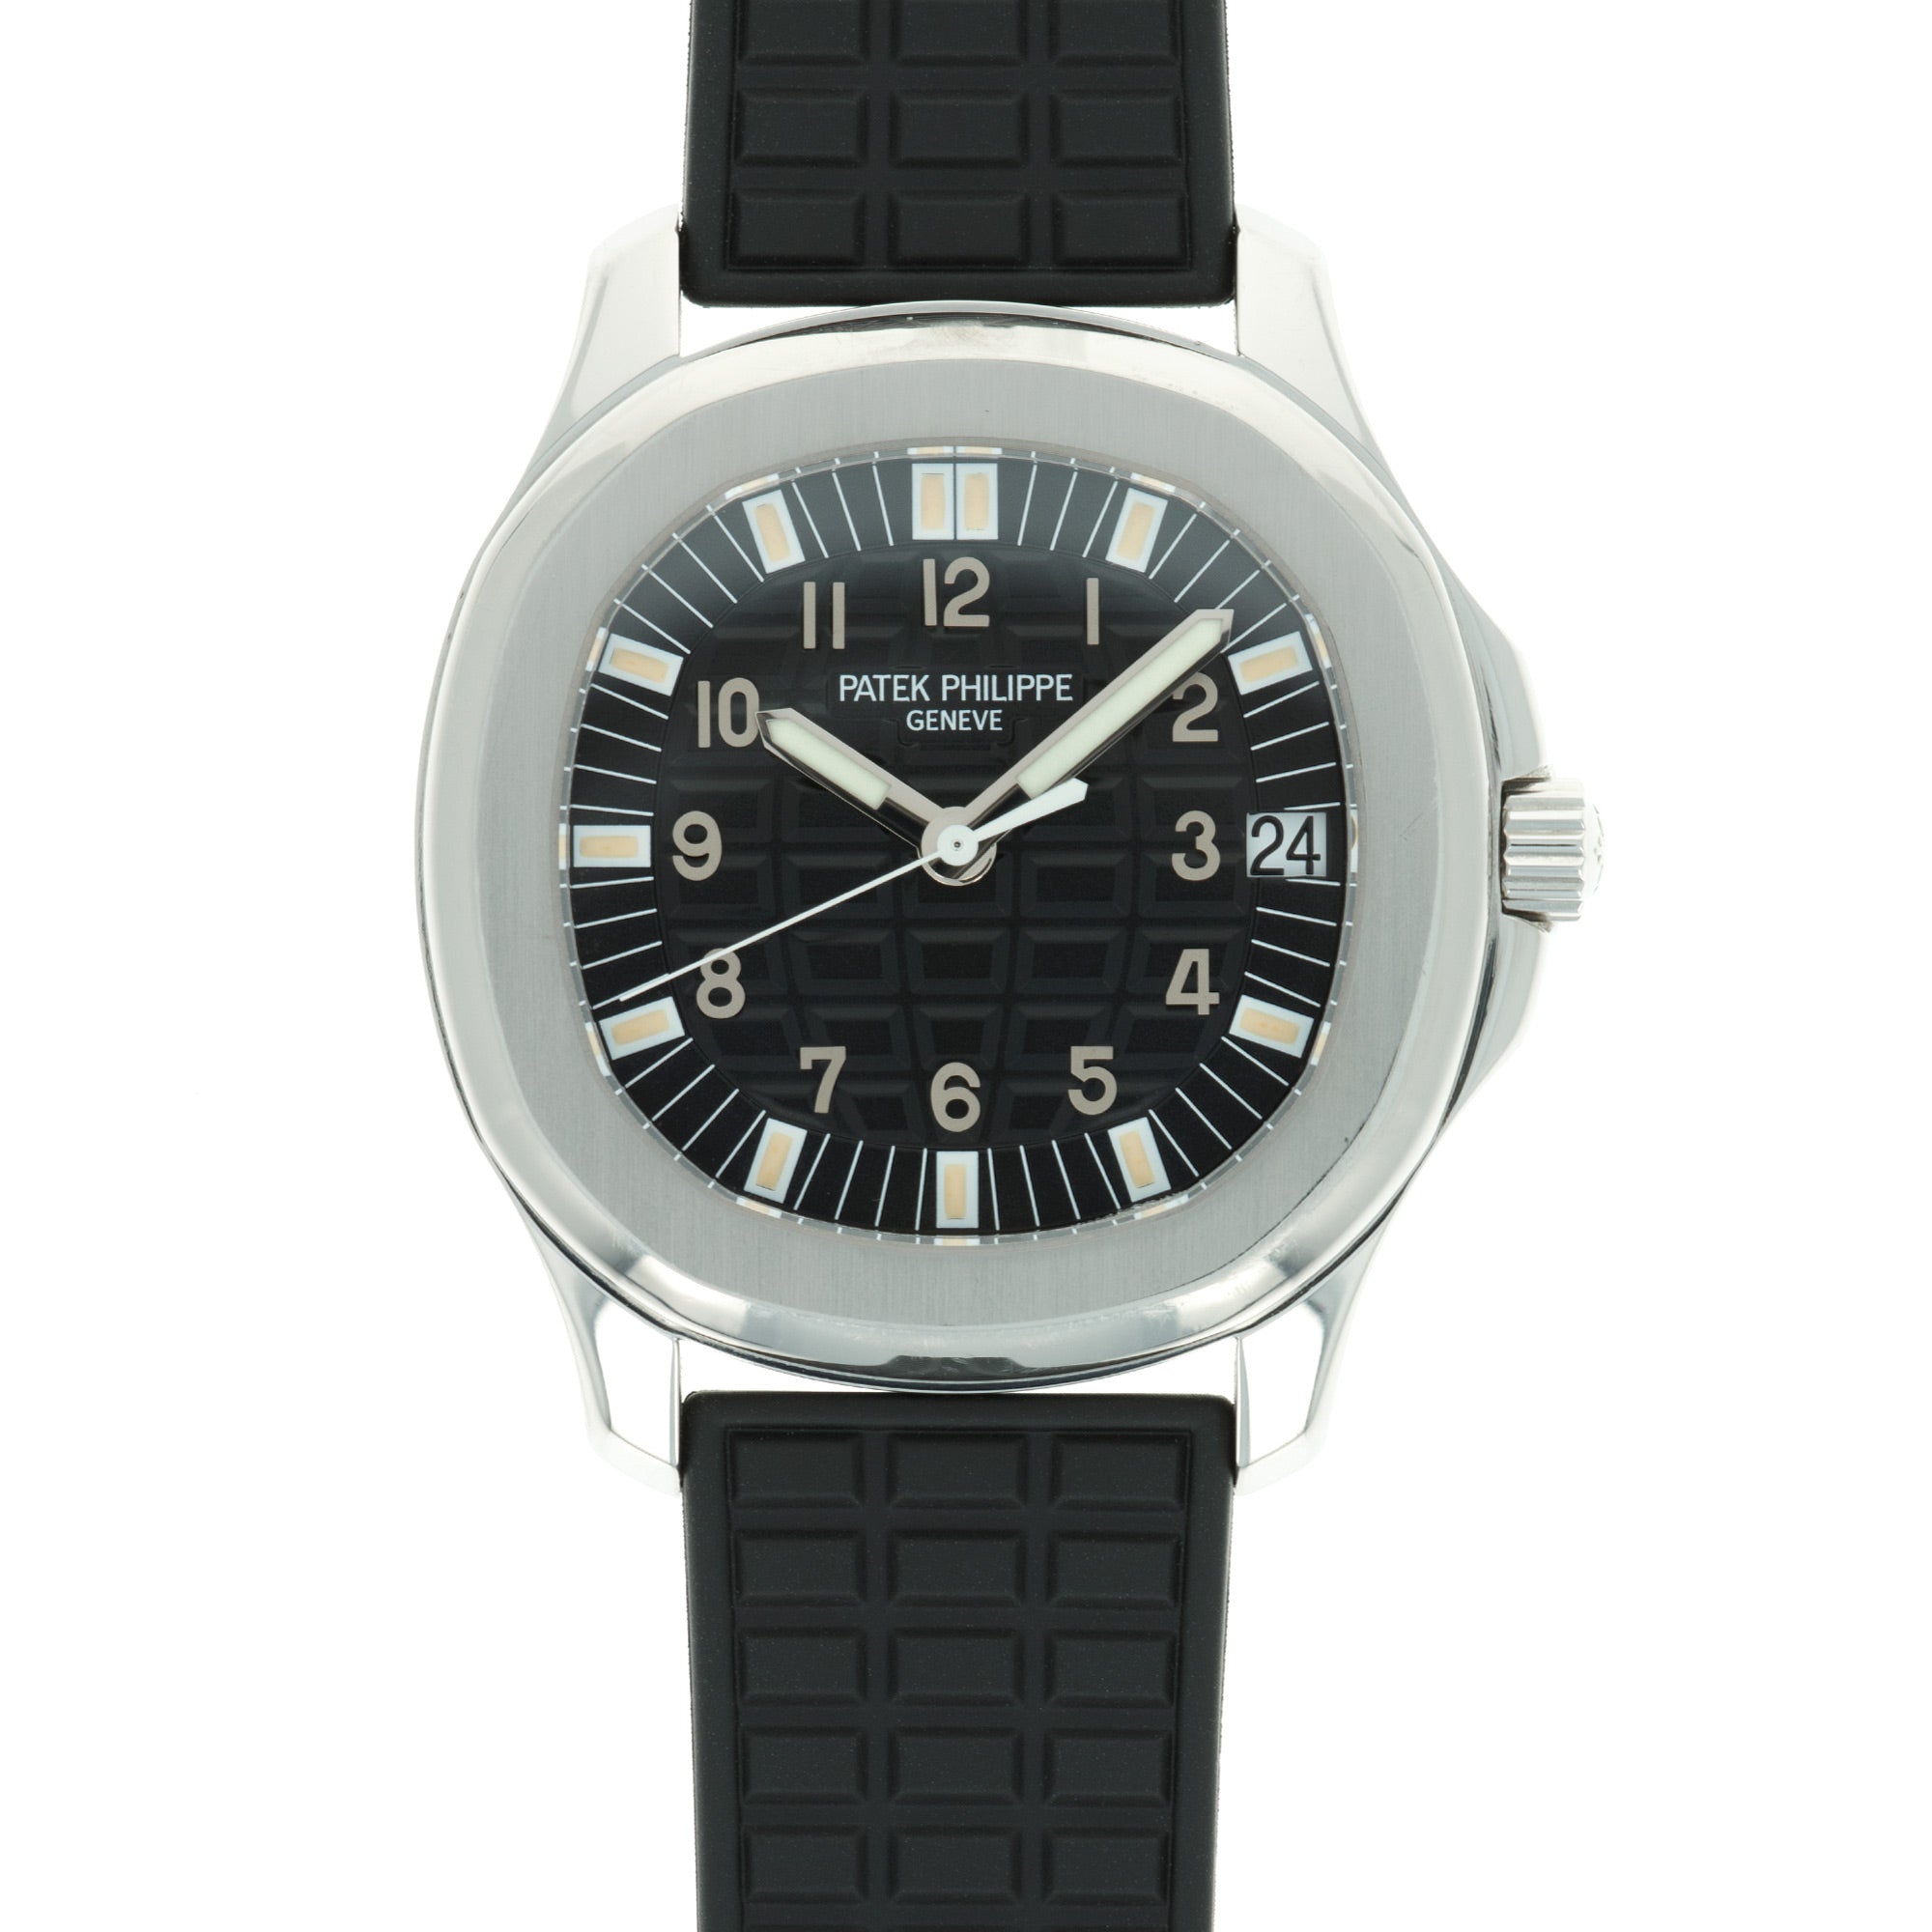 Patek Philippe - Patek Philippe Aquanaut Jumbo Watch Ref. 5065 with Original Box and Paper - The Keystone Watches